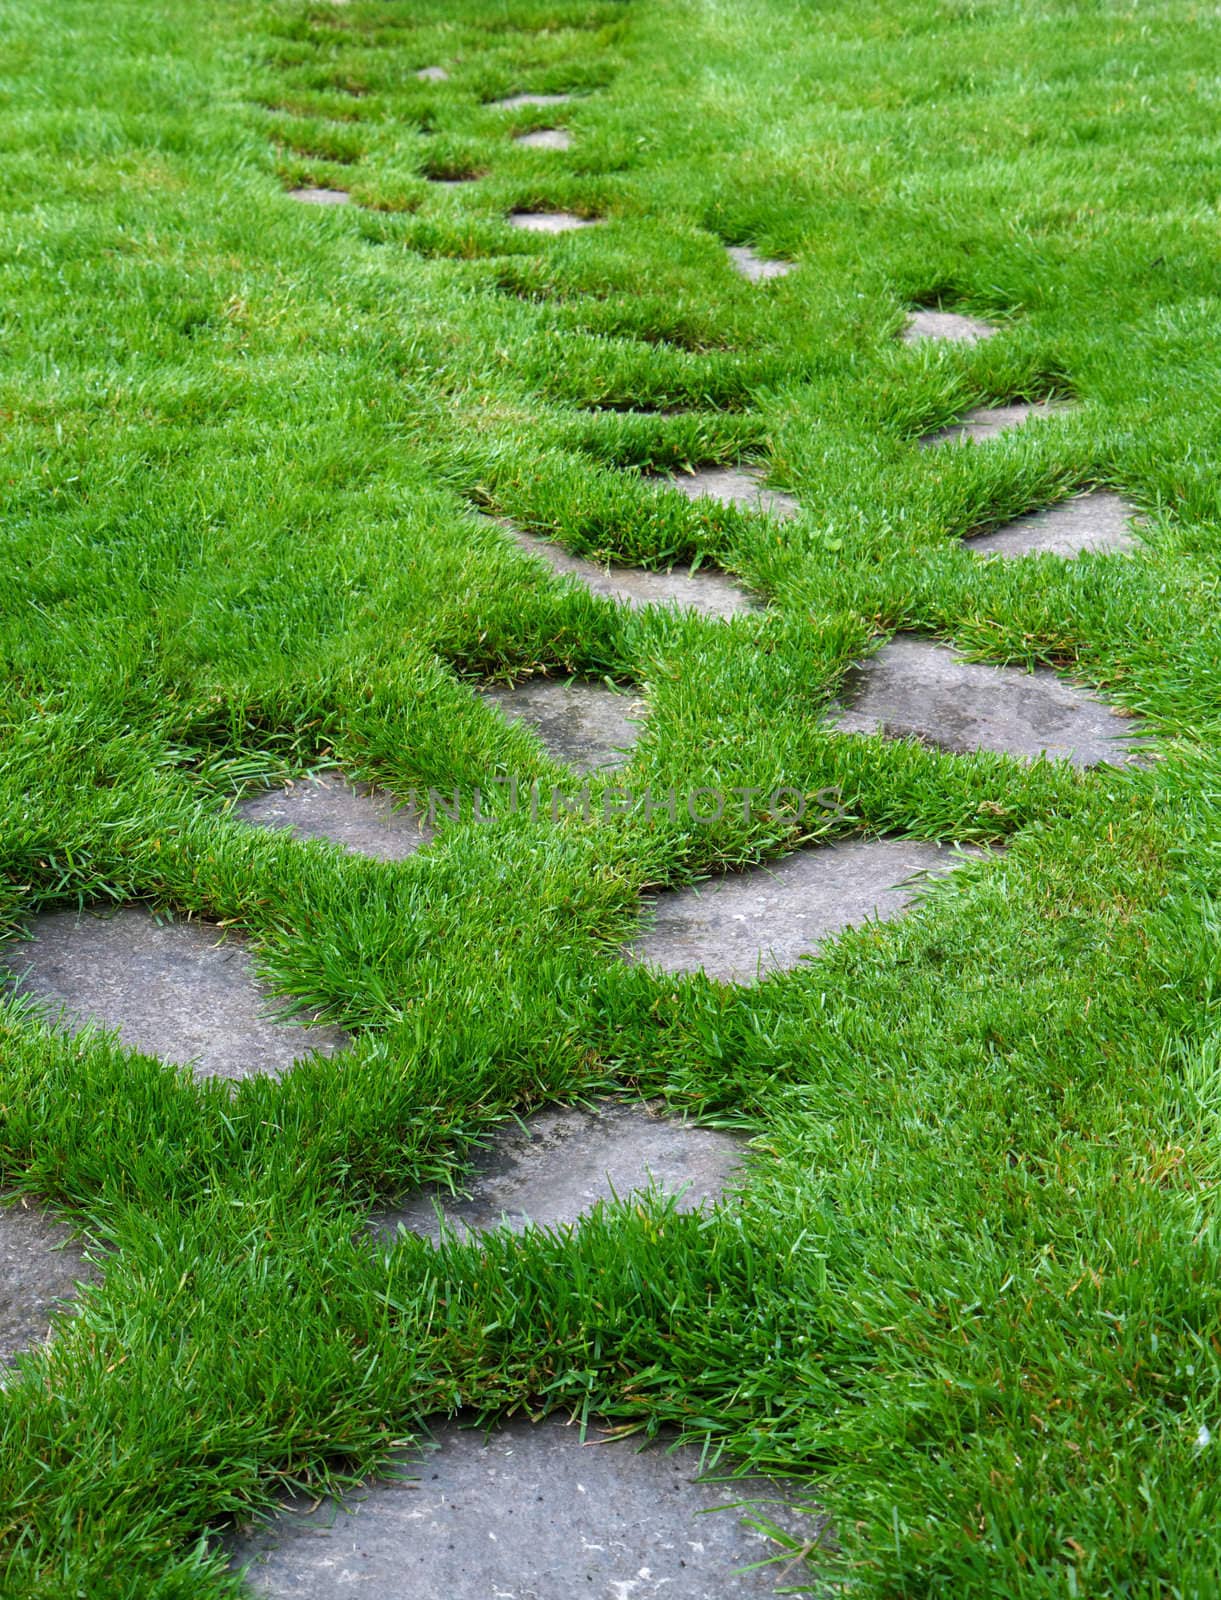 Stone  Paver Path on a lush green grass lawn